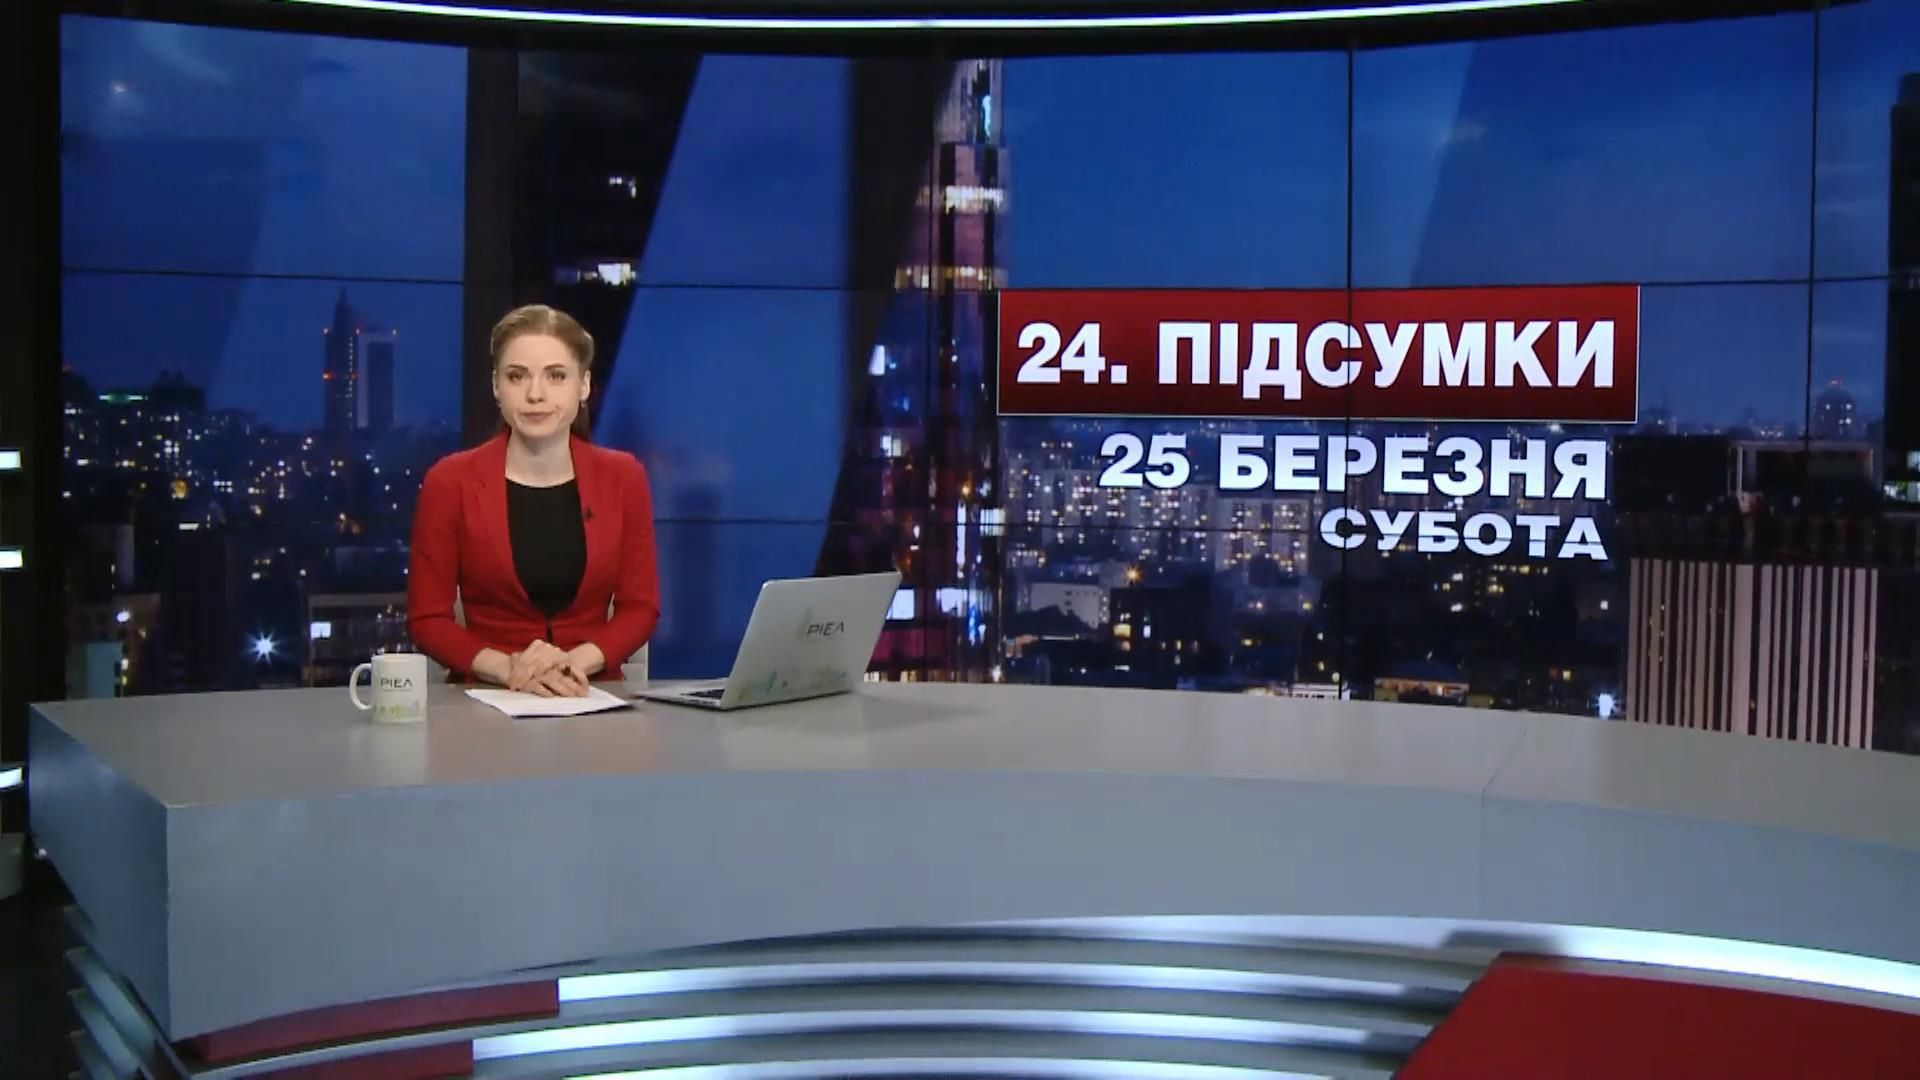 Итоговый выпуск новостей за 21:00: Жертвы в зоне АТО. Массовые задержания в Беларуси